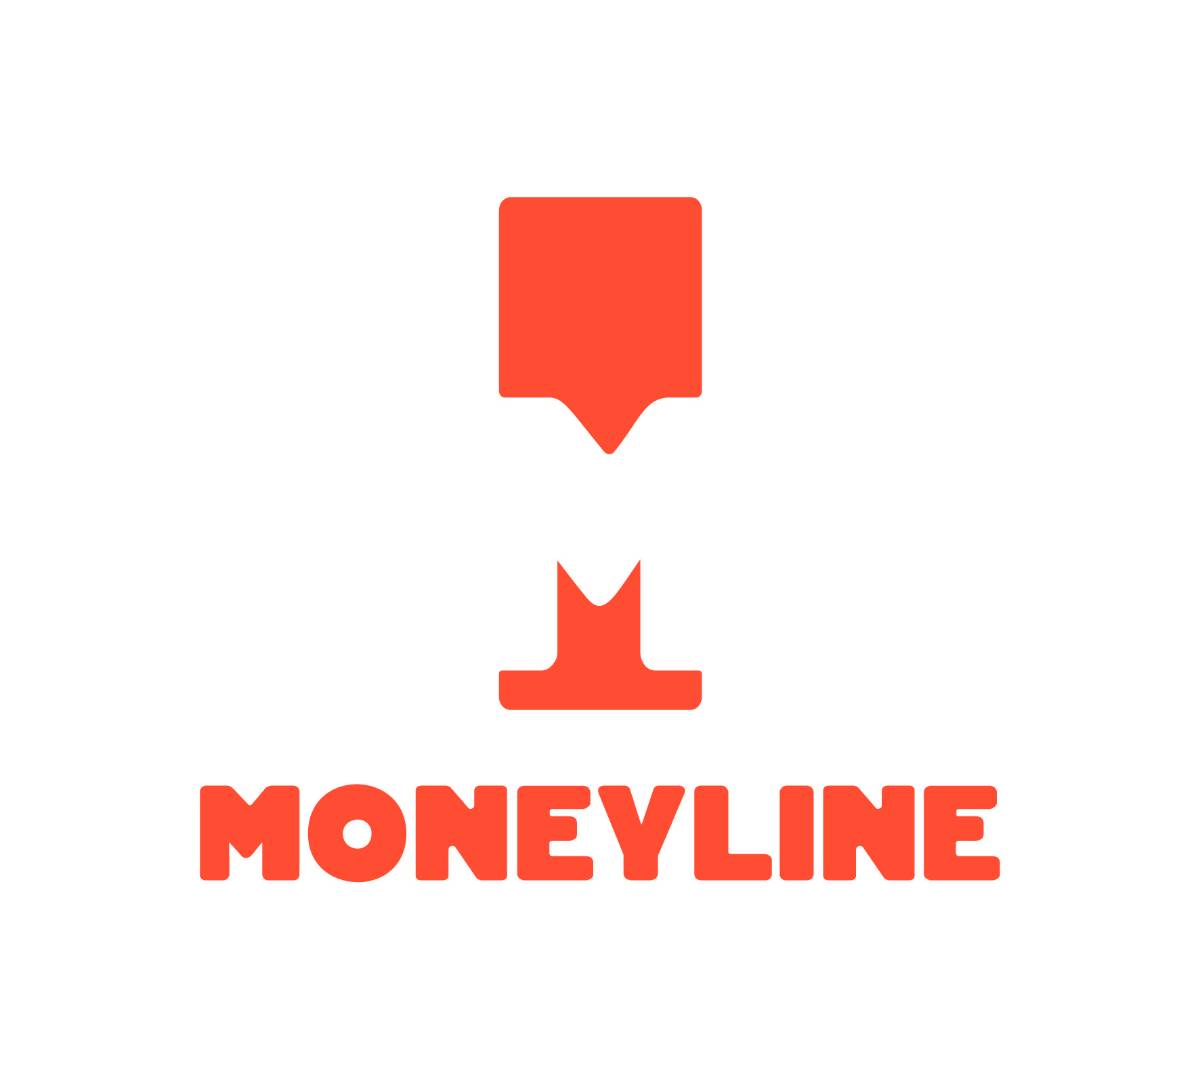 Moneyline FIver for a Friend 